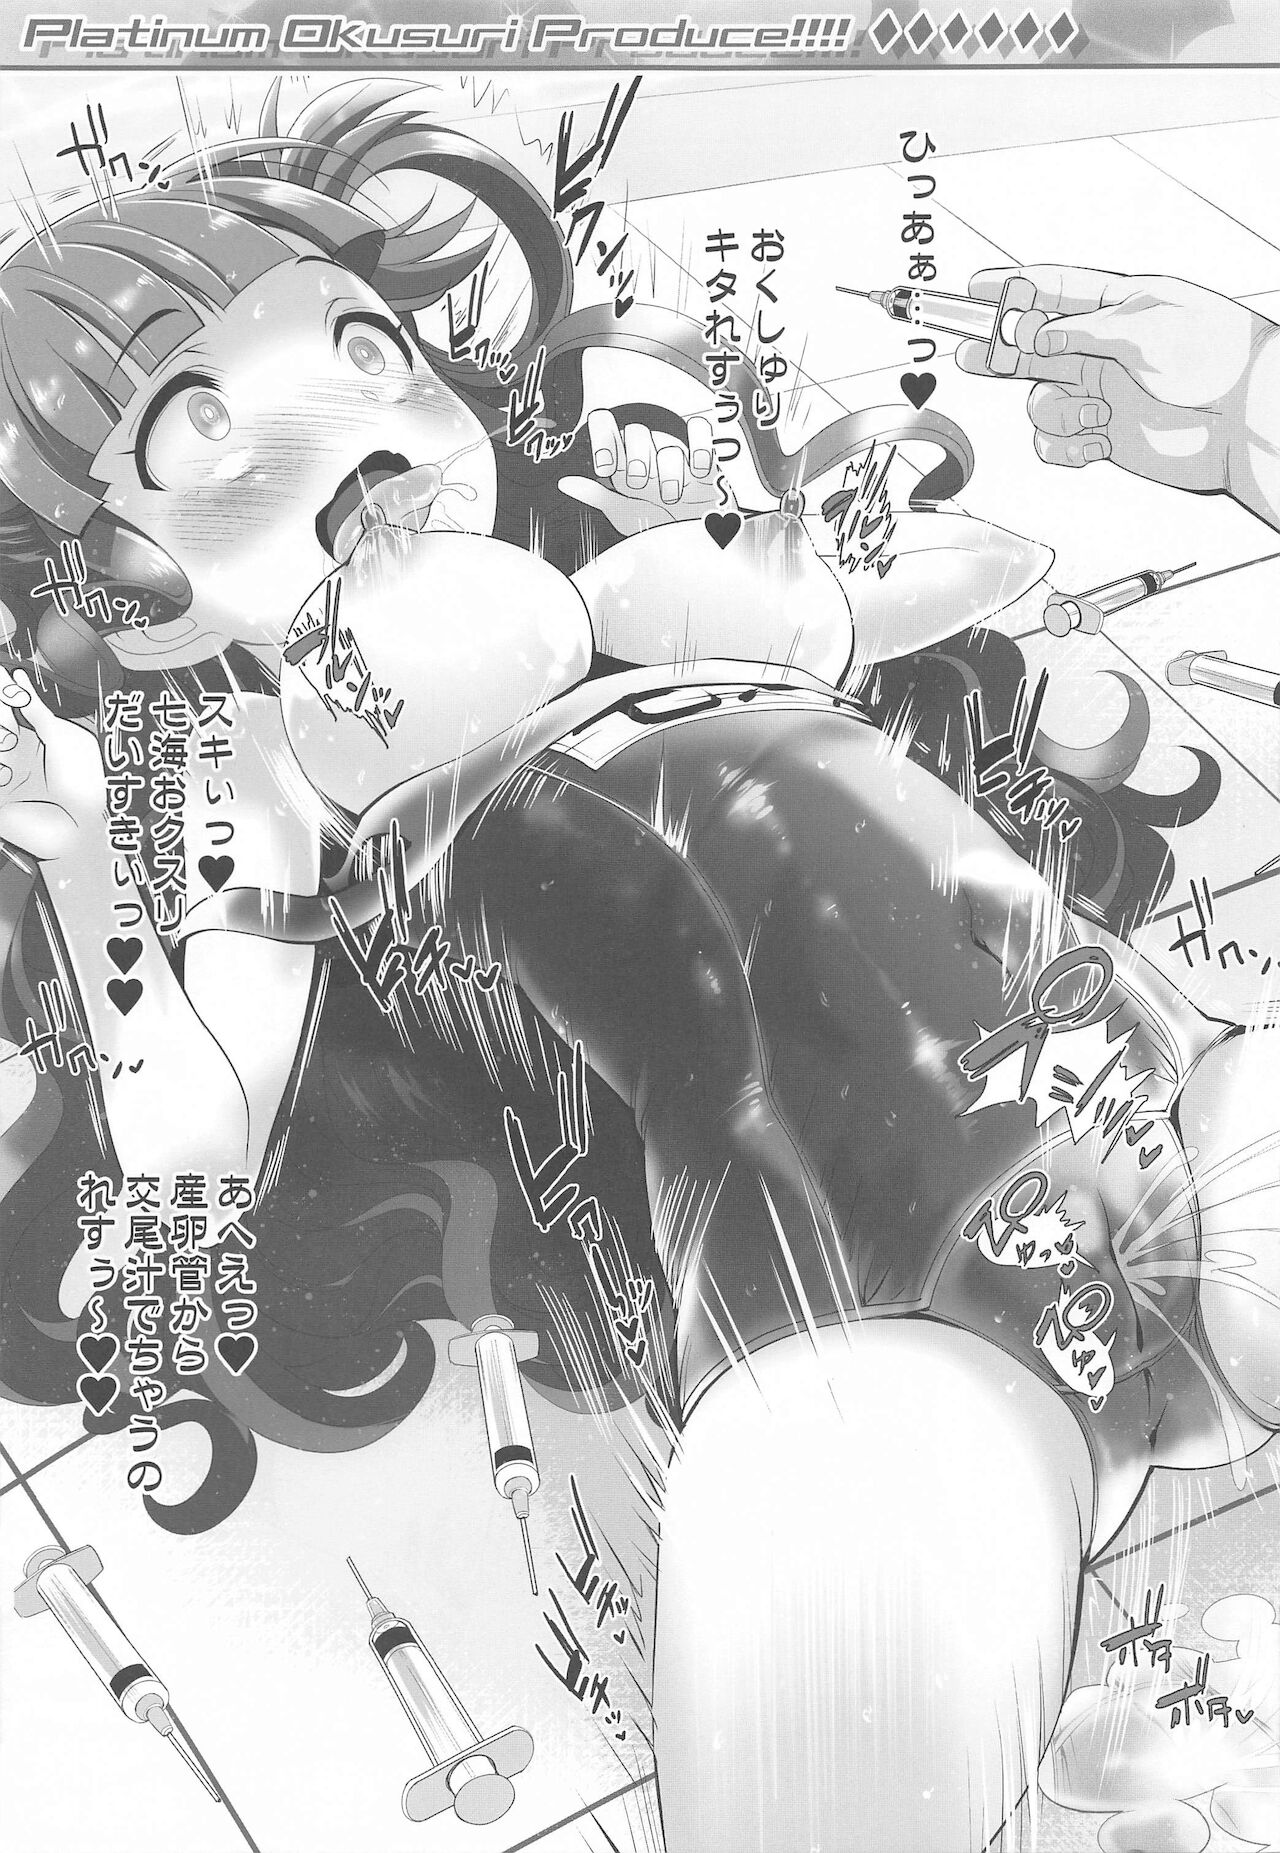 (歌姫庭園29) [ふらいぱん大魔王 (提灯暗光)] Platinum Okusuri Produce!!!! ◇◇◇◇◇◇ (アイドルマスター シンデレラガールズ)